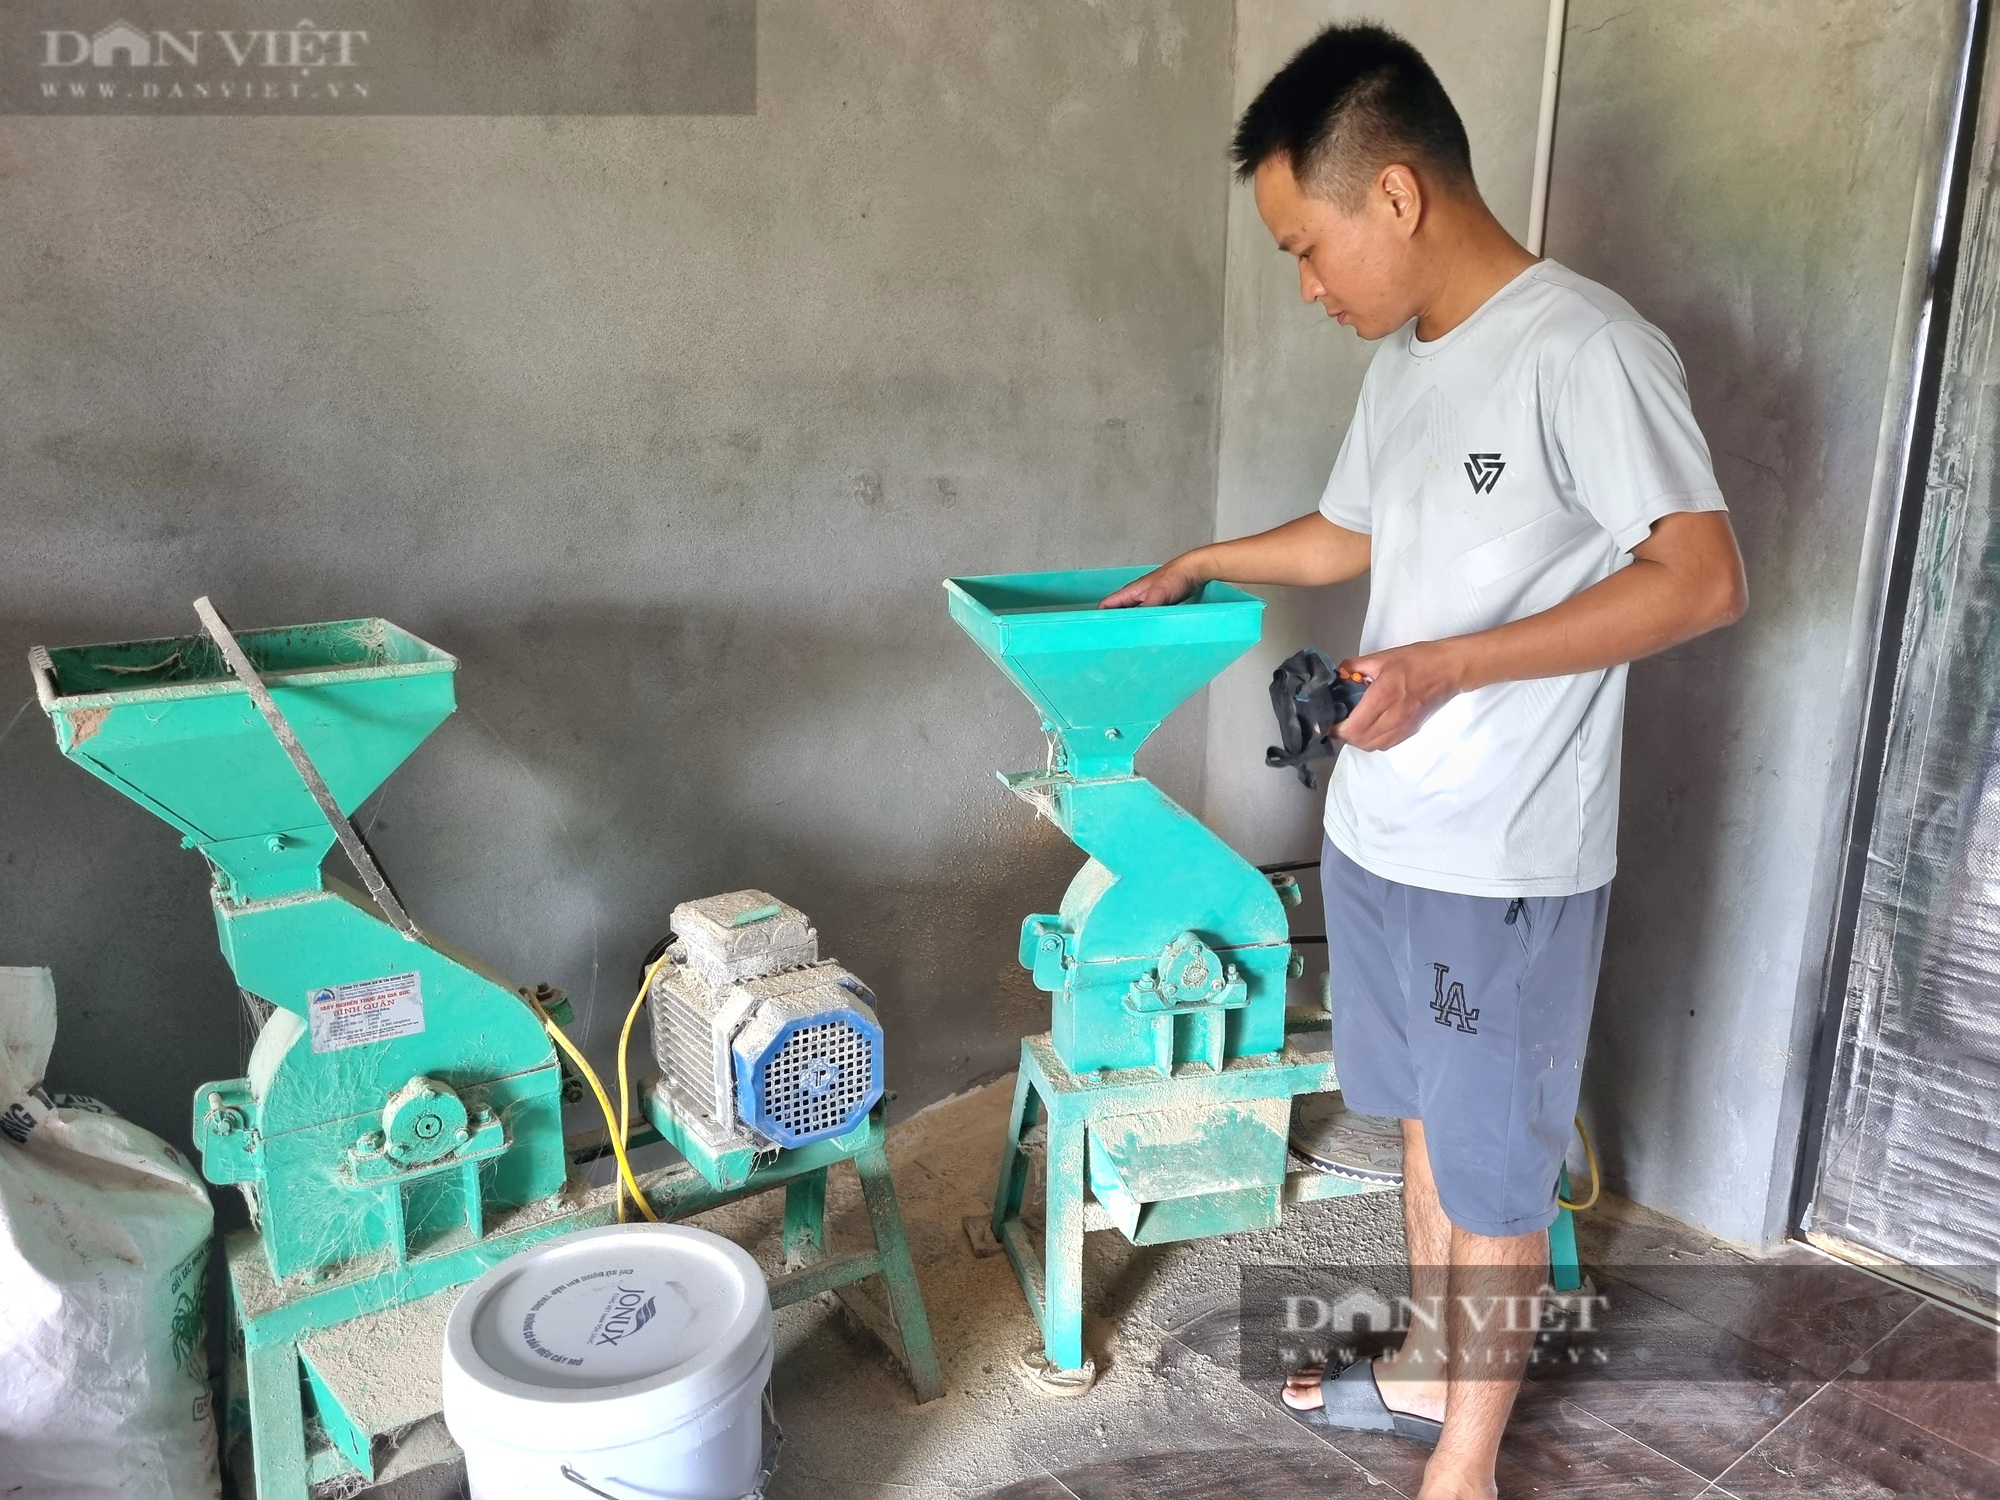 Bỏ nghề kỹ sư xây dựng, 9X Ninh Bình về quê nuôi con dúi mốc lãi 15 triệu đồng/tháng - Ảnh 9.